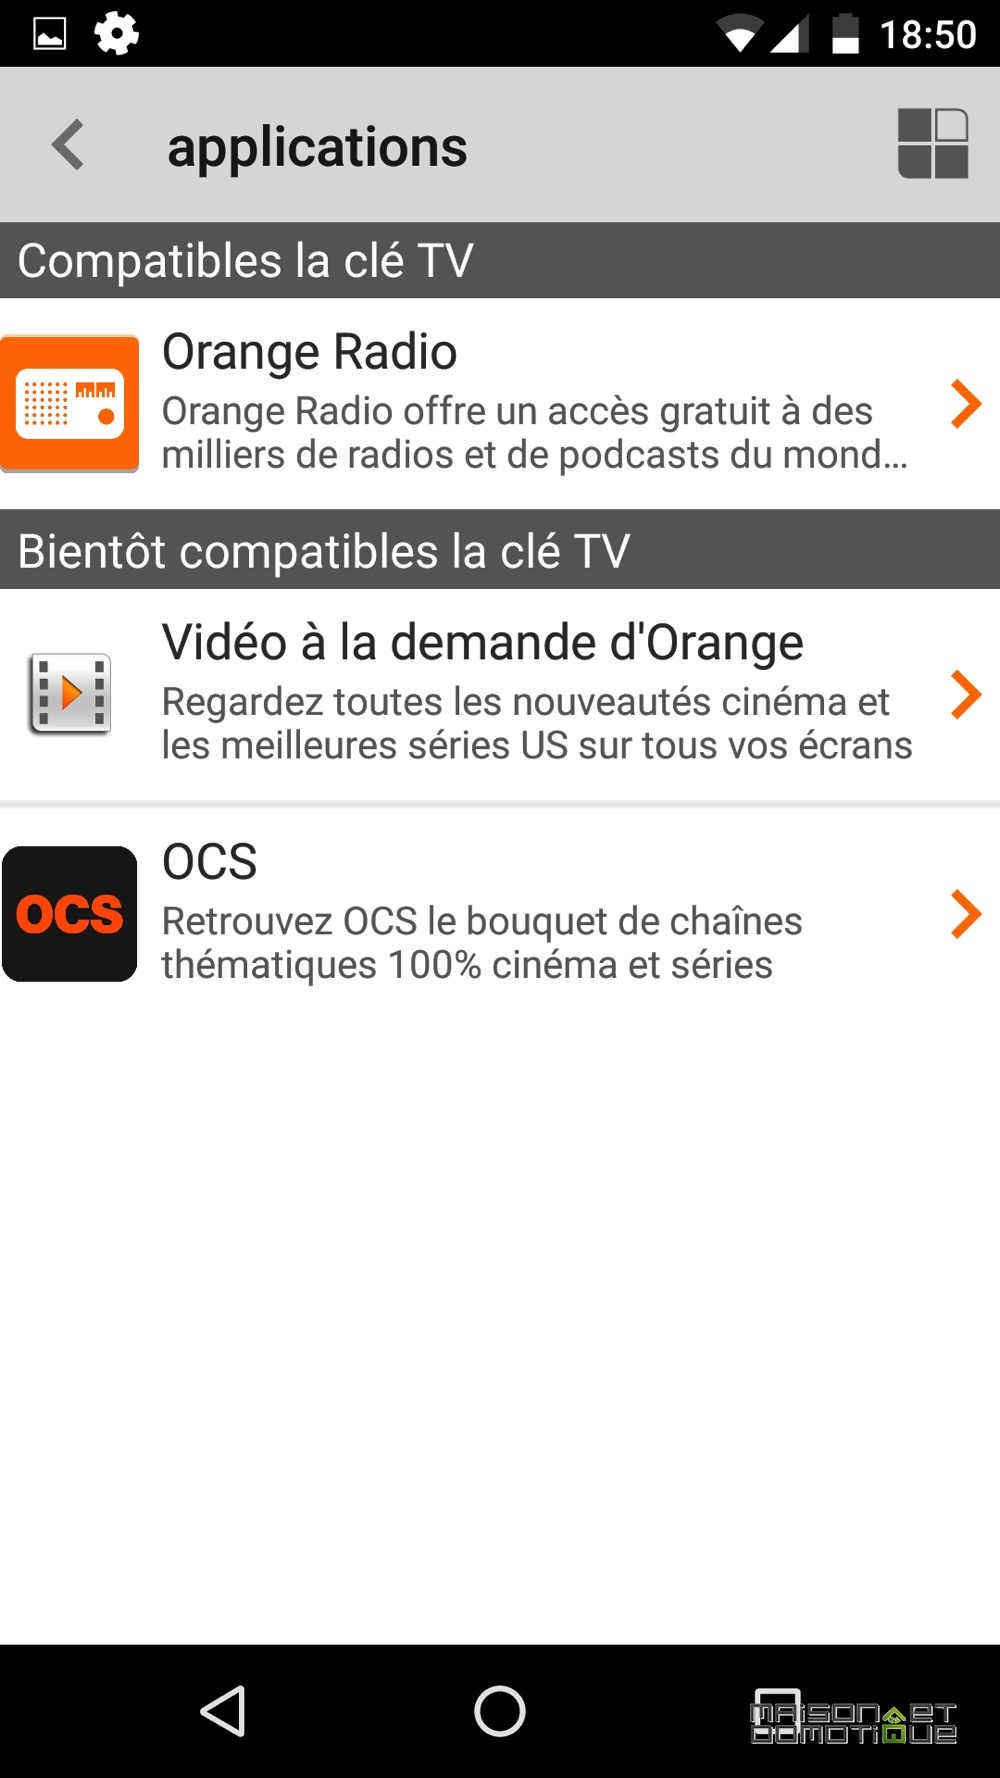 Clé TV : Orange aussi a son mini « décodeur » TV